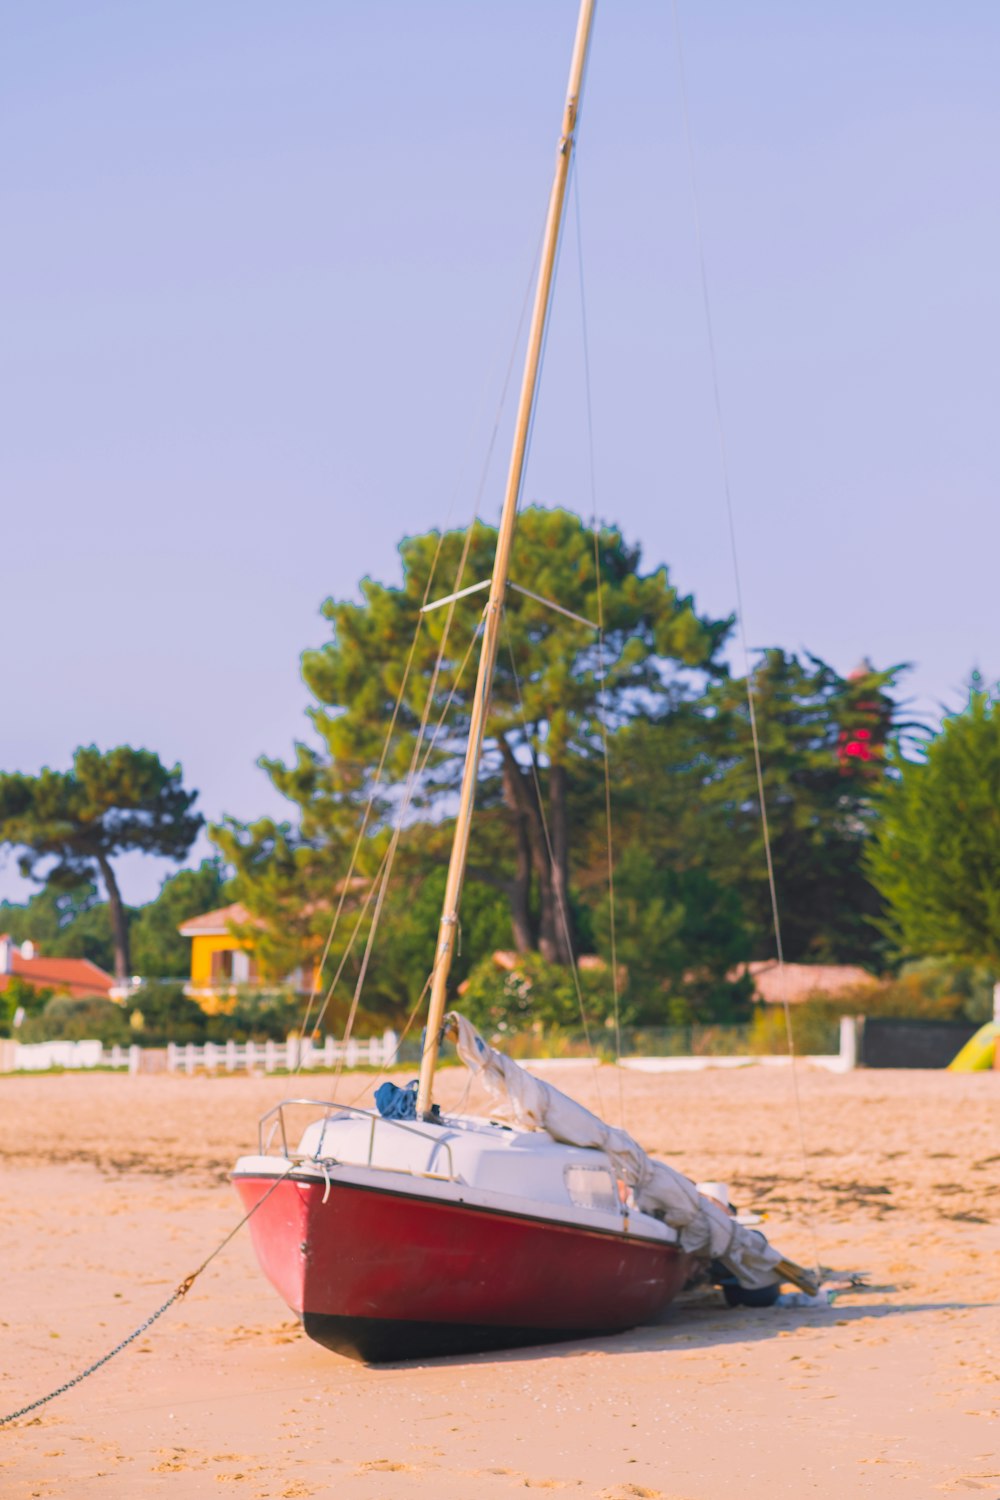 Ein kleines Segelboot am Strand mit Bäumen im Hintergrund